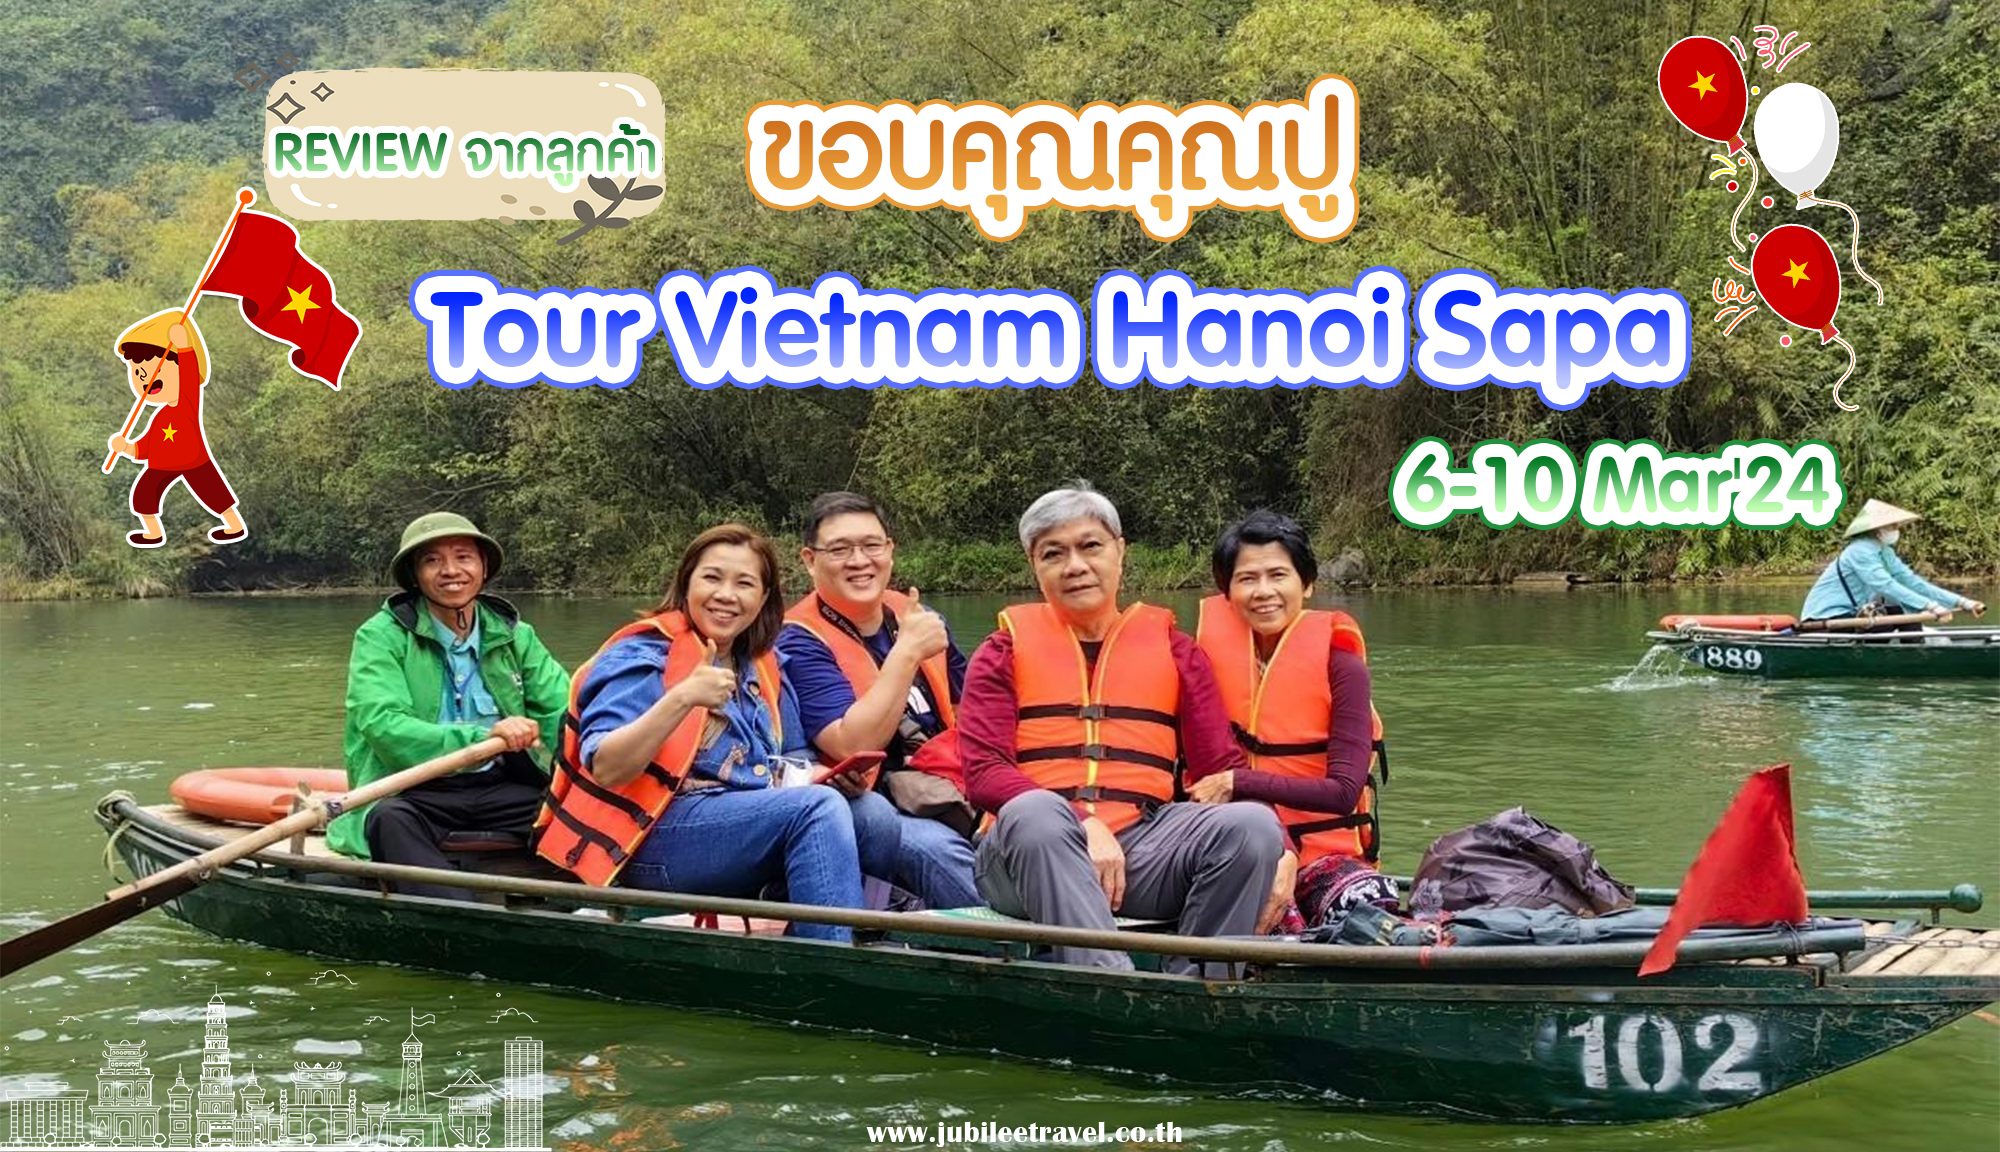 ทัวร์เวียดนาม ฟานซิปัน คุณปู Tour Vietnam 6-10 Mar’24